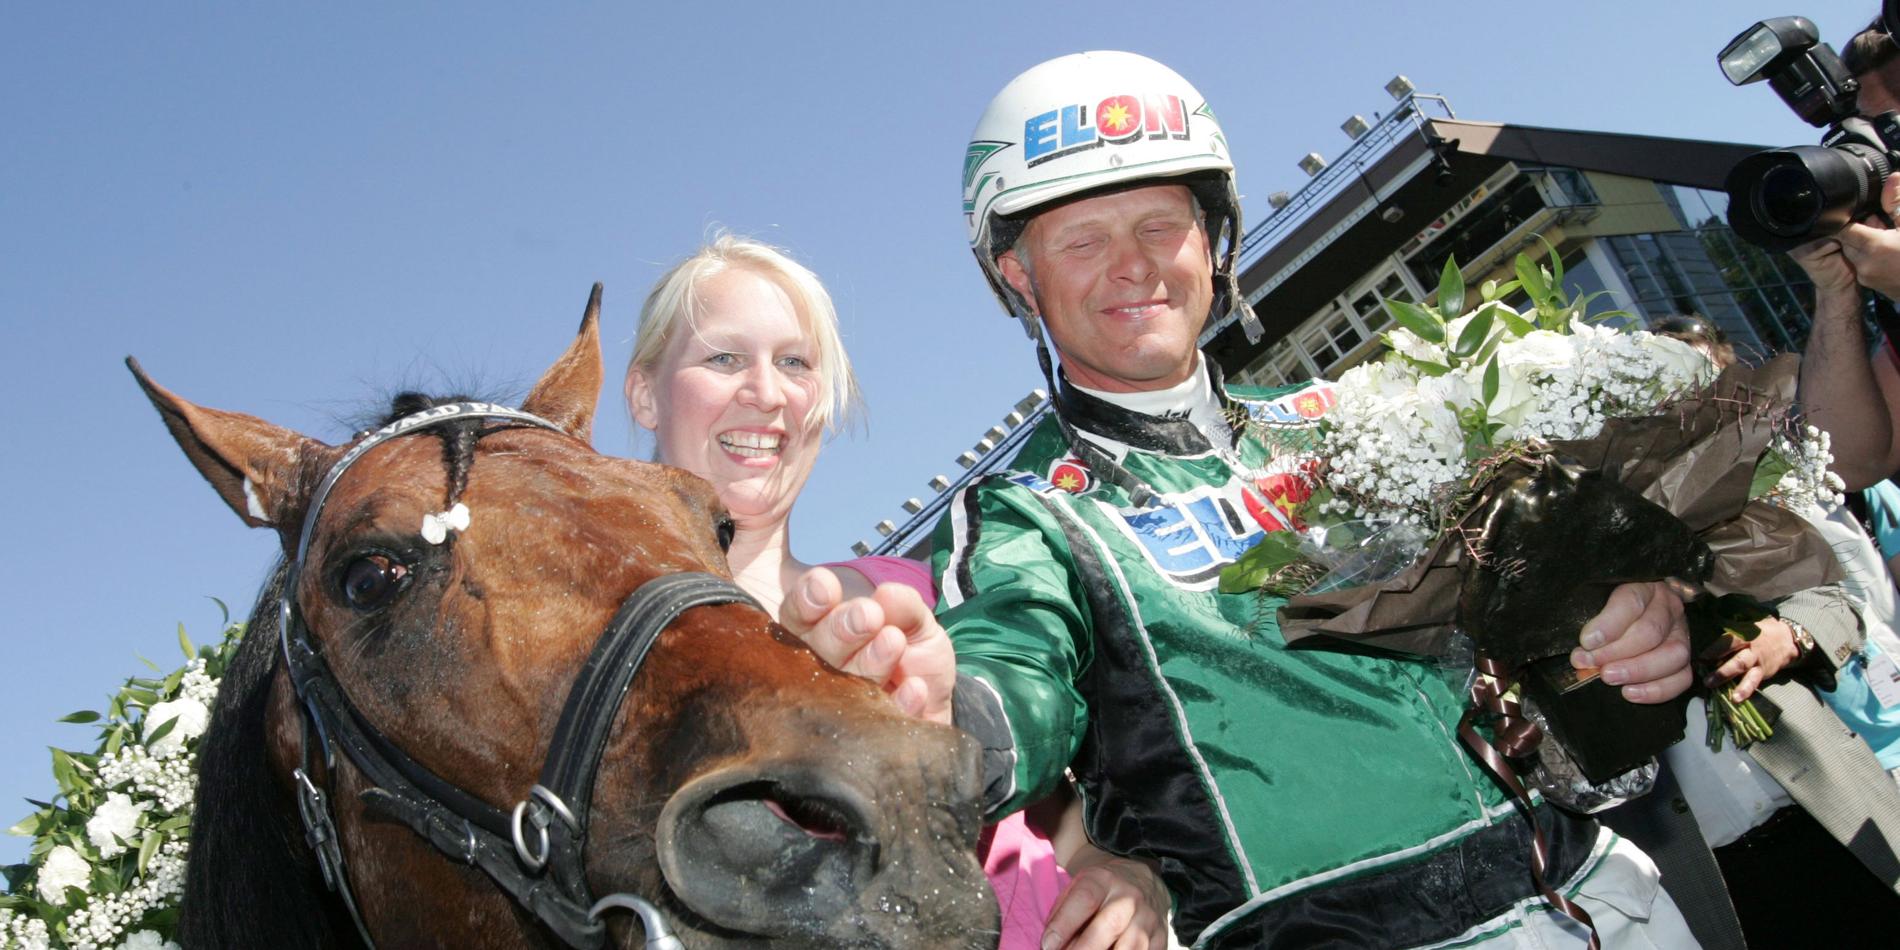 2009 körde Åke in 44 miljoner på svensk mark och vann bland annat Elitloppet med Torvald Palema, men håller bedriften i USA som vassare då det gäller att vara på topp vid exakt rätt tillfällen. 